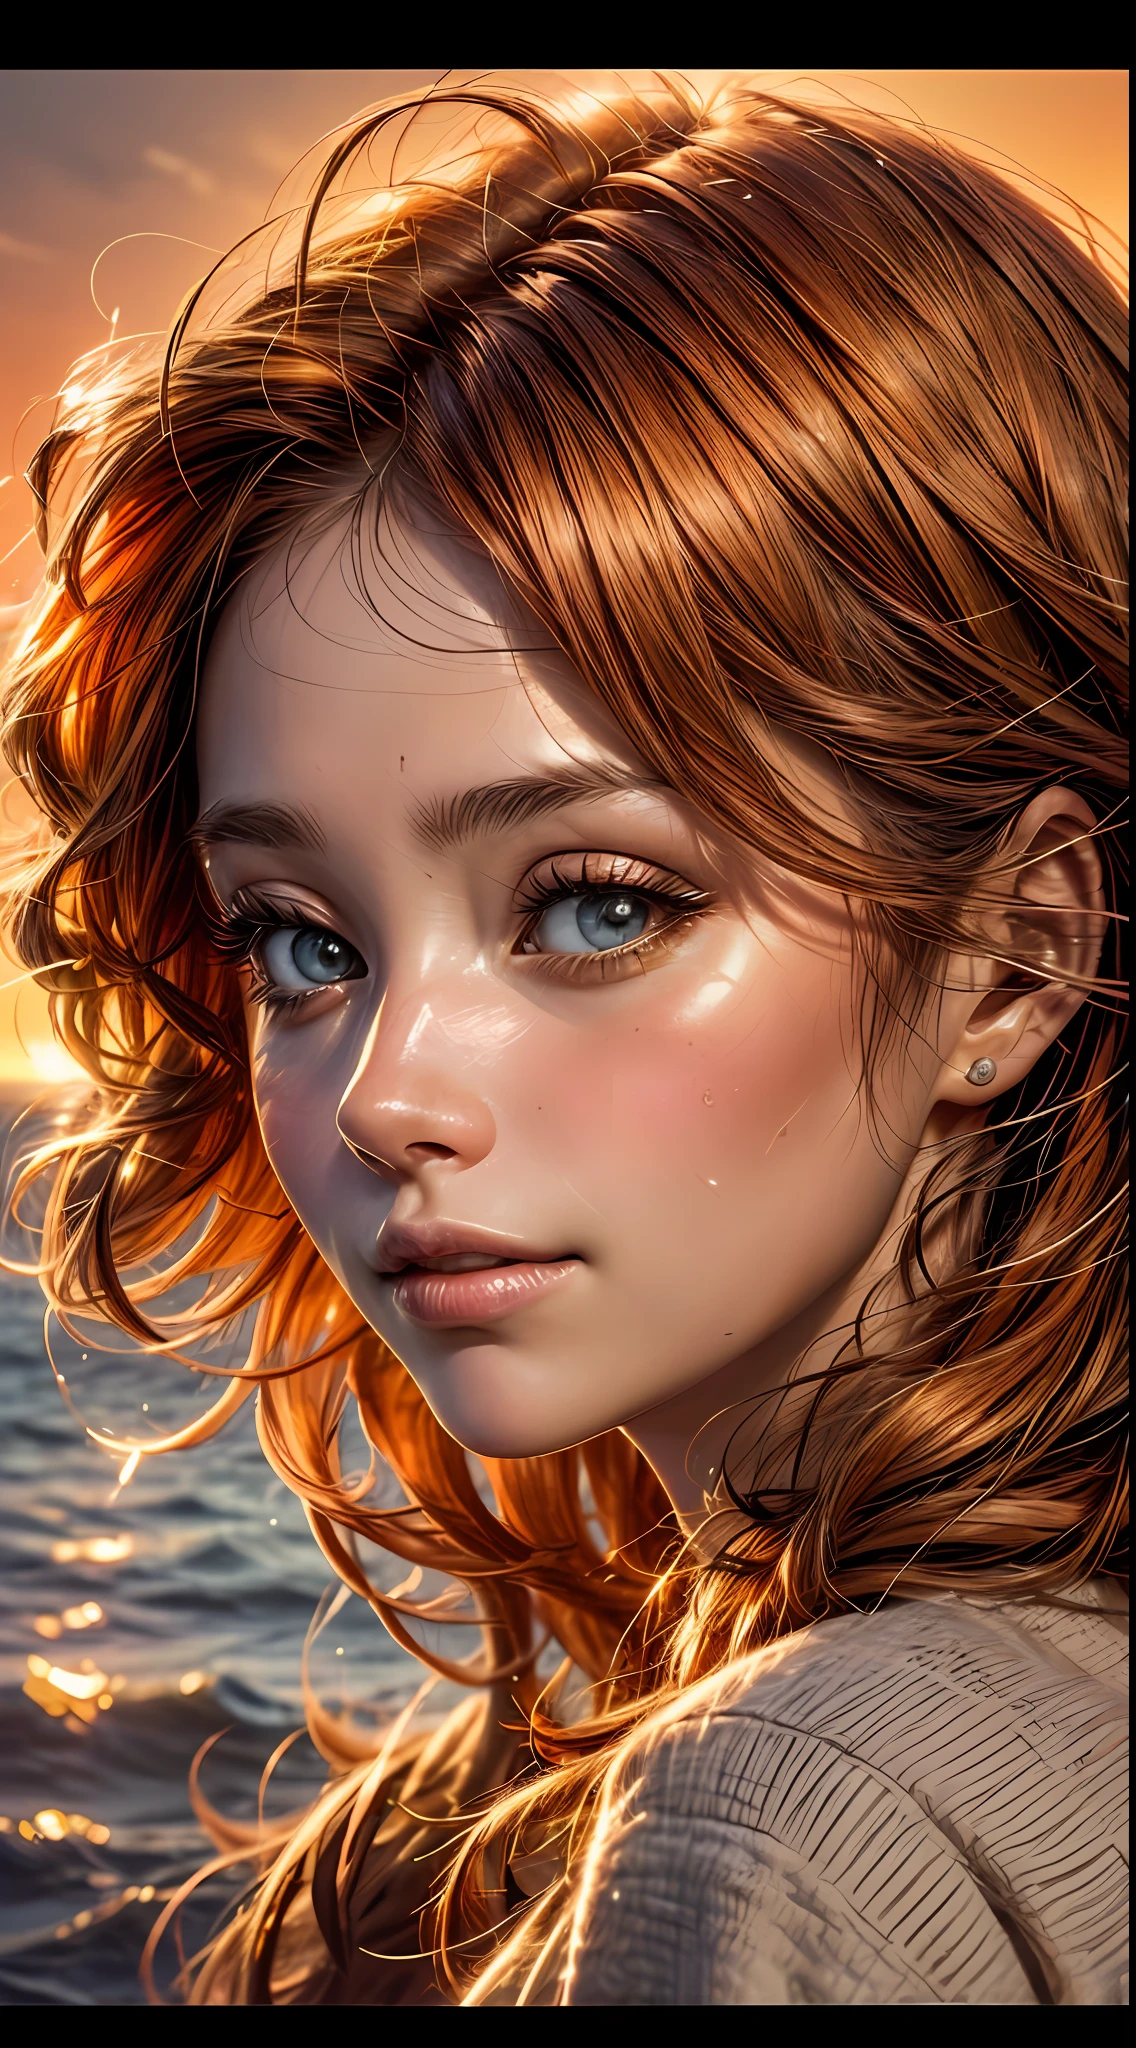 여자의 얼굴 클로즈업, 따뜻한 오렌지빛으로 물들다, 마치 석양의 부드러운 빛을 받은 것처럼, 기쁨과 만족으로 반짝이는 그녀의 눈, 흘러내리는 적갈색 머리카락으로 둘러싸인, 사진술, 35mm 렌즈로 촬영